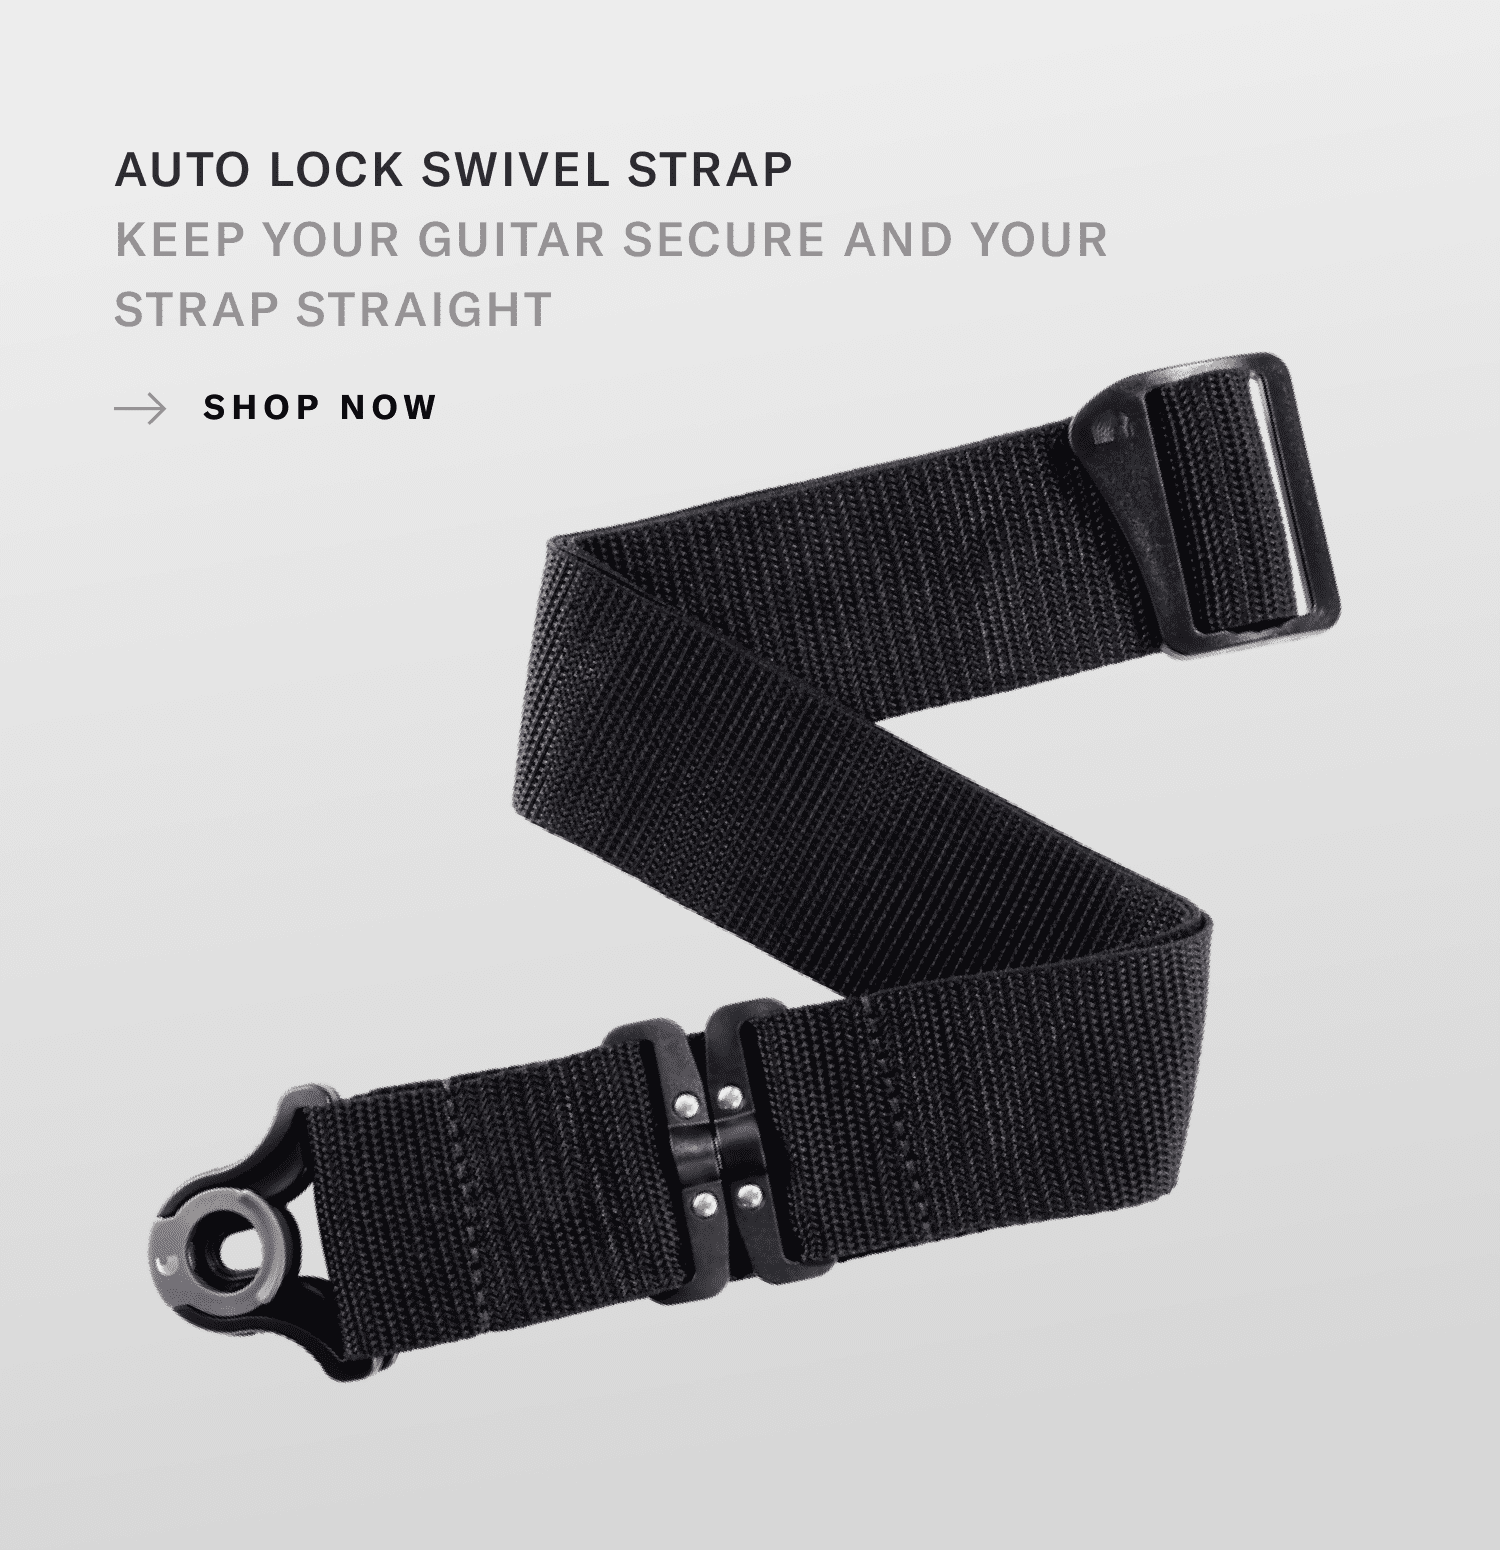 Auto Lock Swivel Guitar Strap